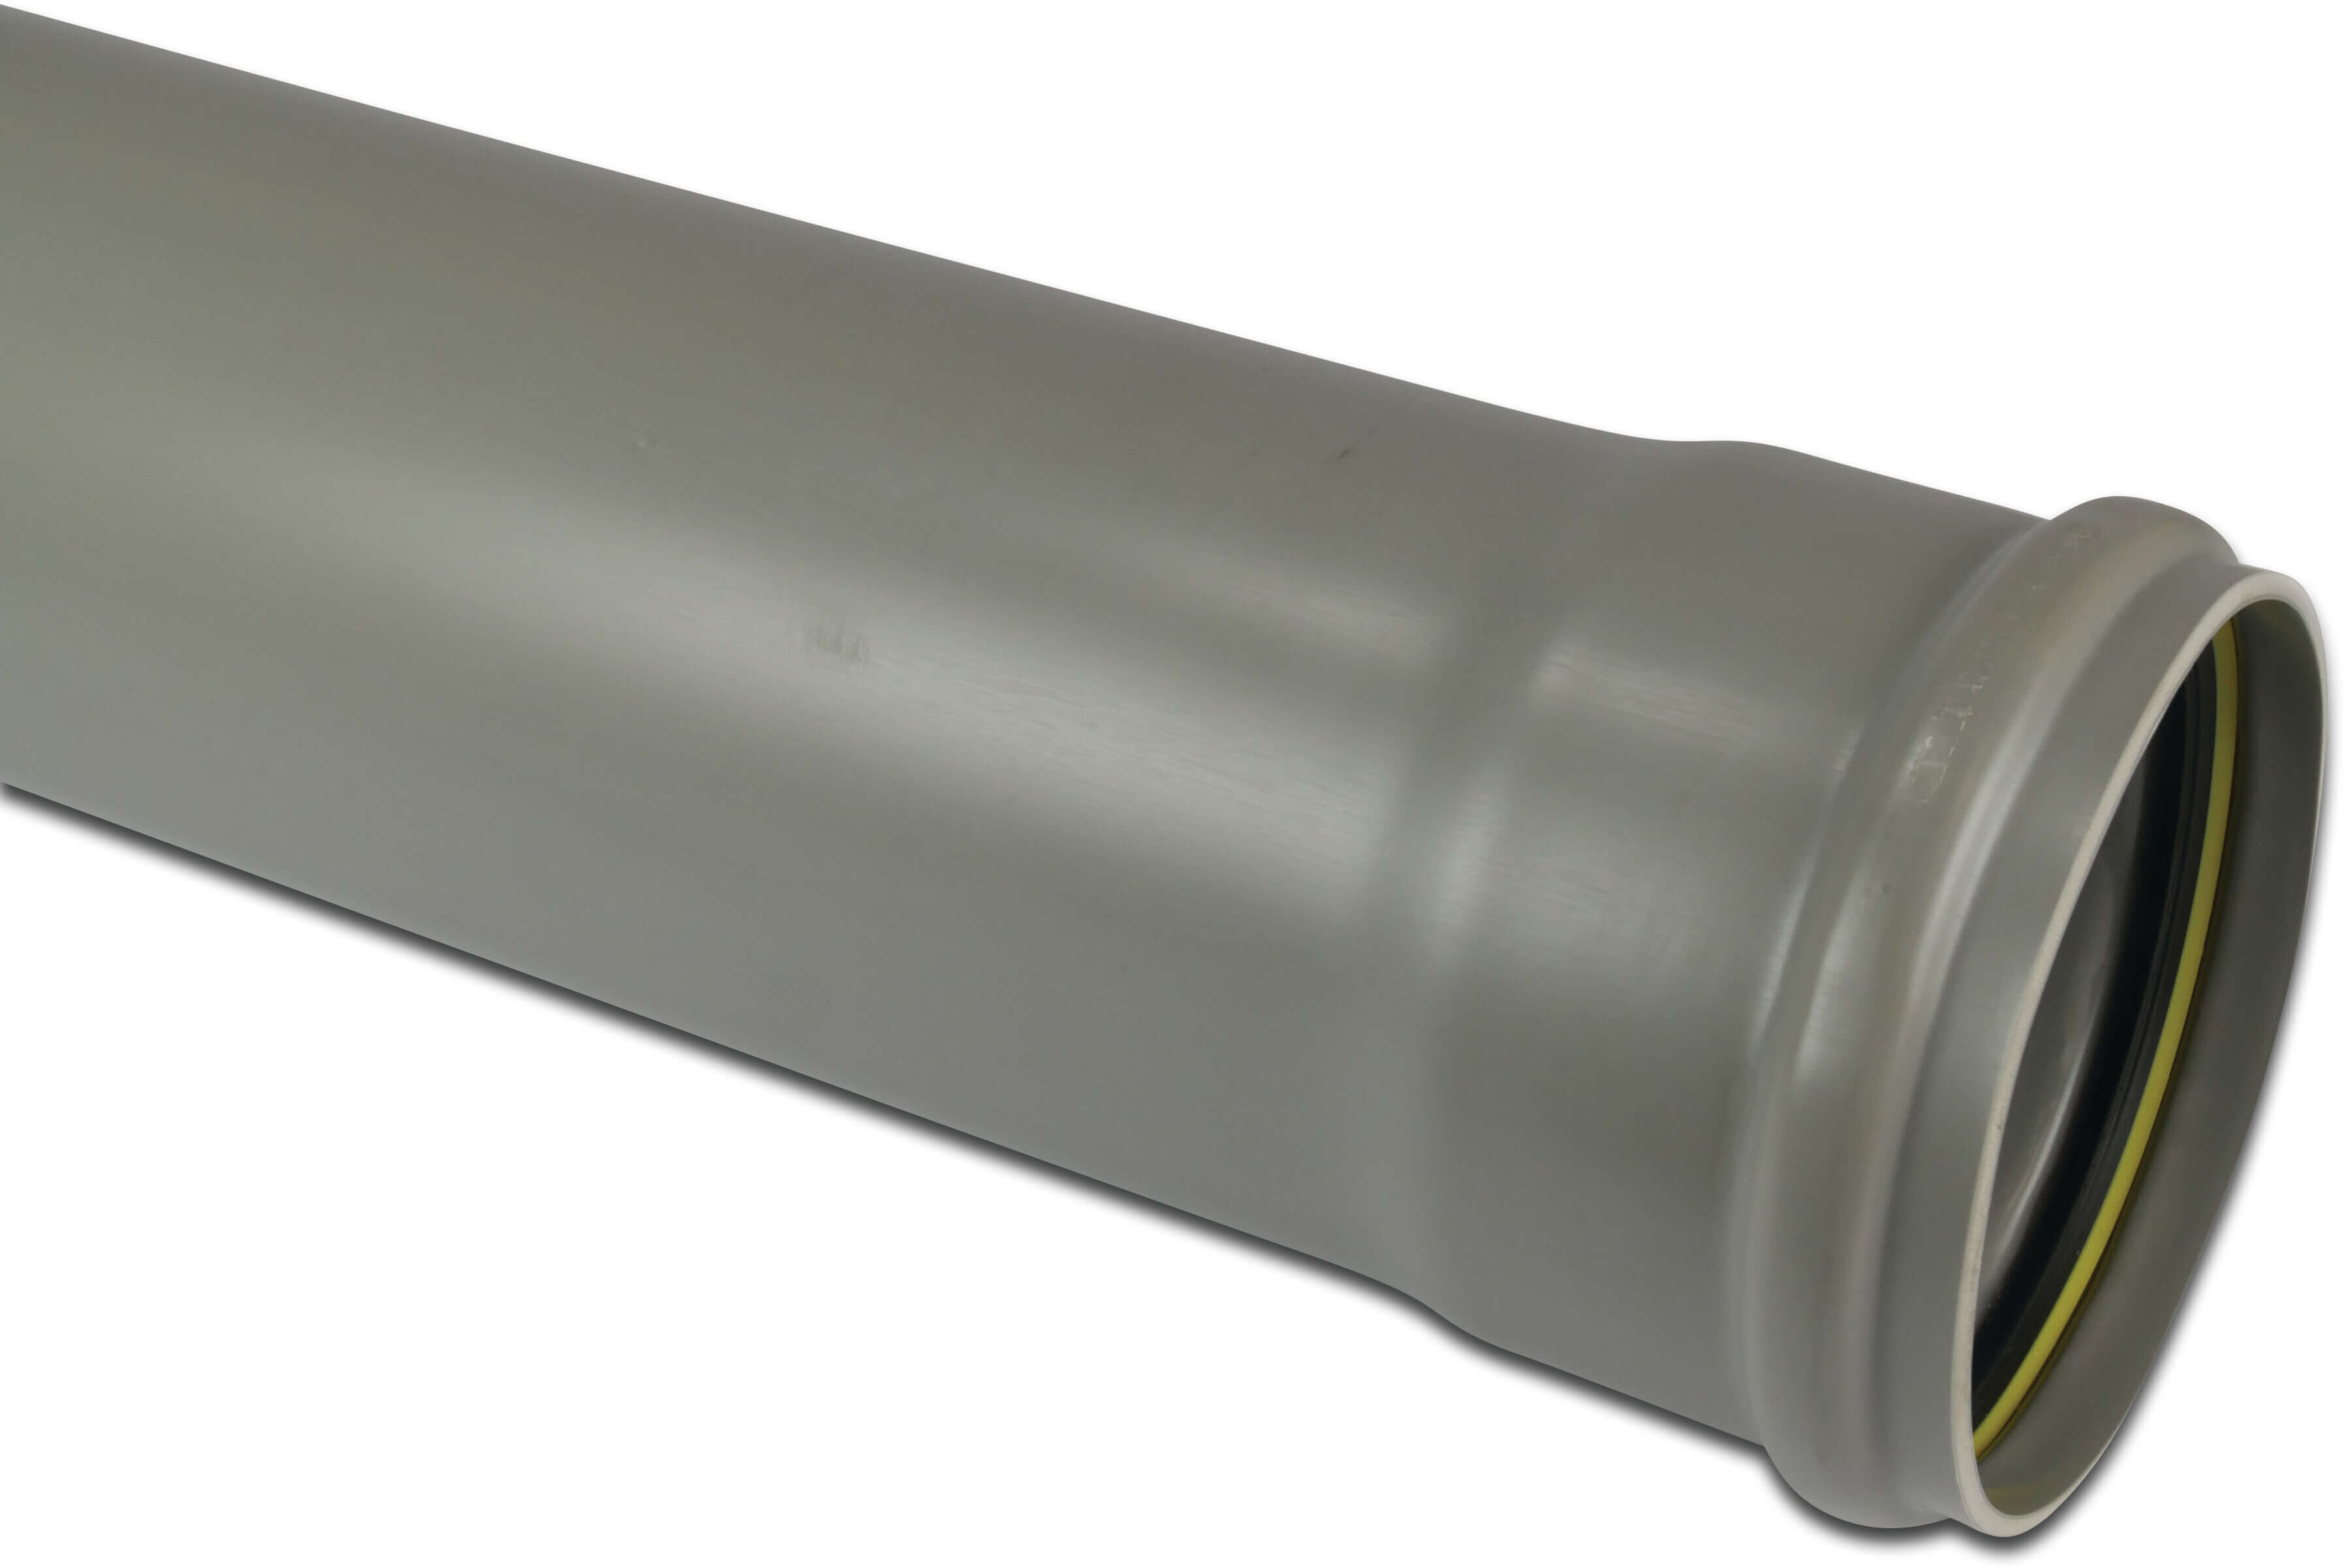 Abflussrohr PVC-U 160 mm x 3,2 mm SN2 Steckmuffe x Glatt Grau 5m BENOR